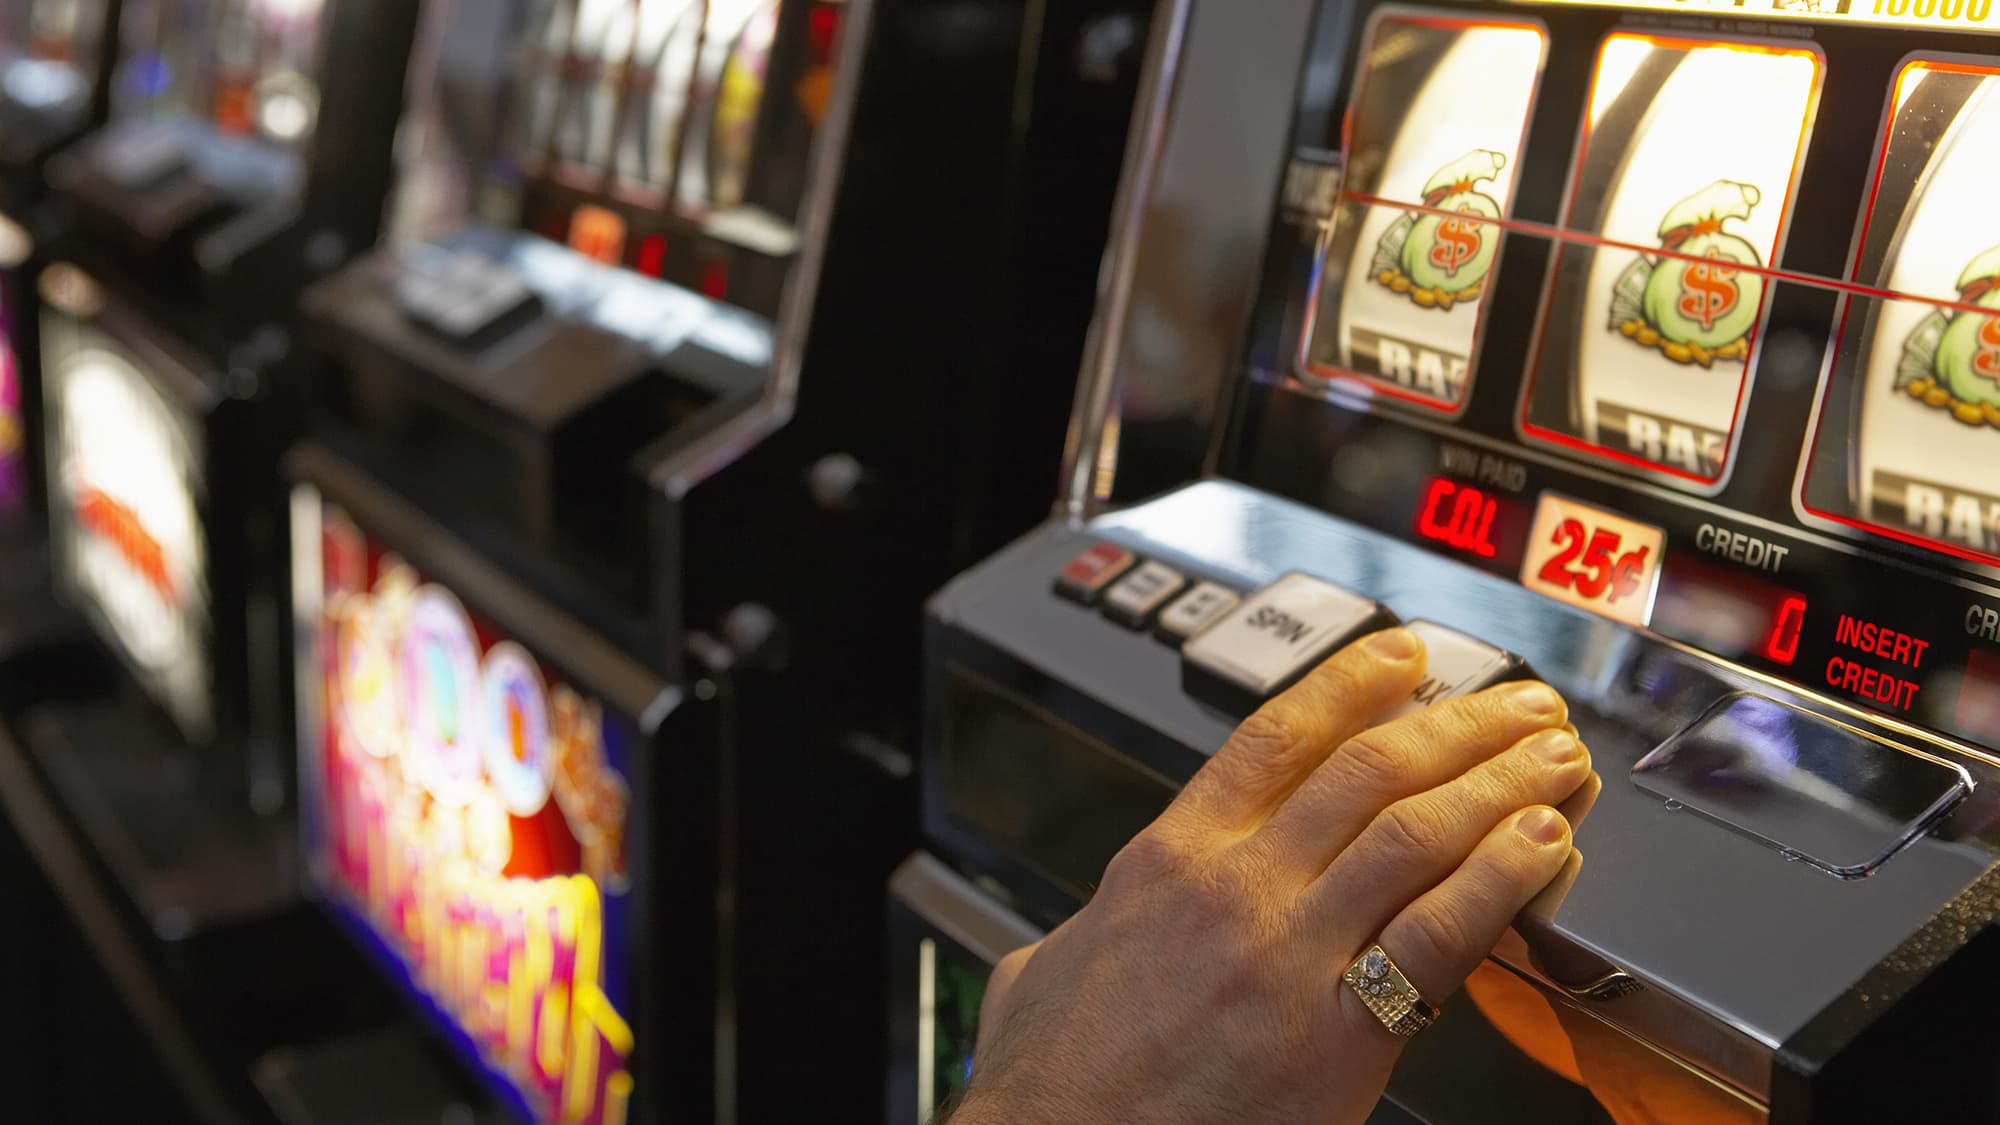 азартные игры игровые автоматы за деньги